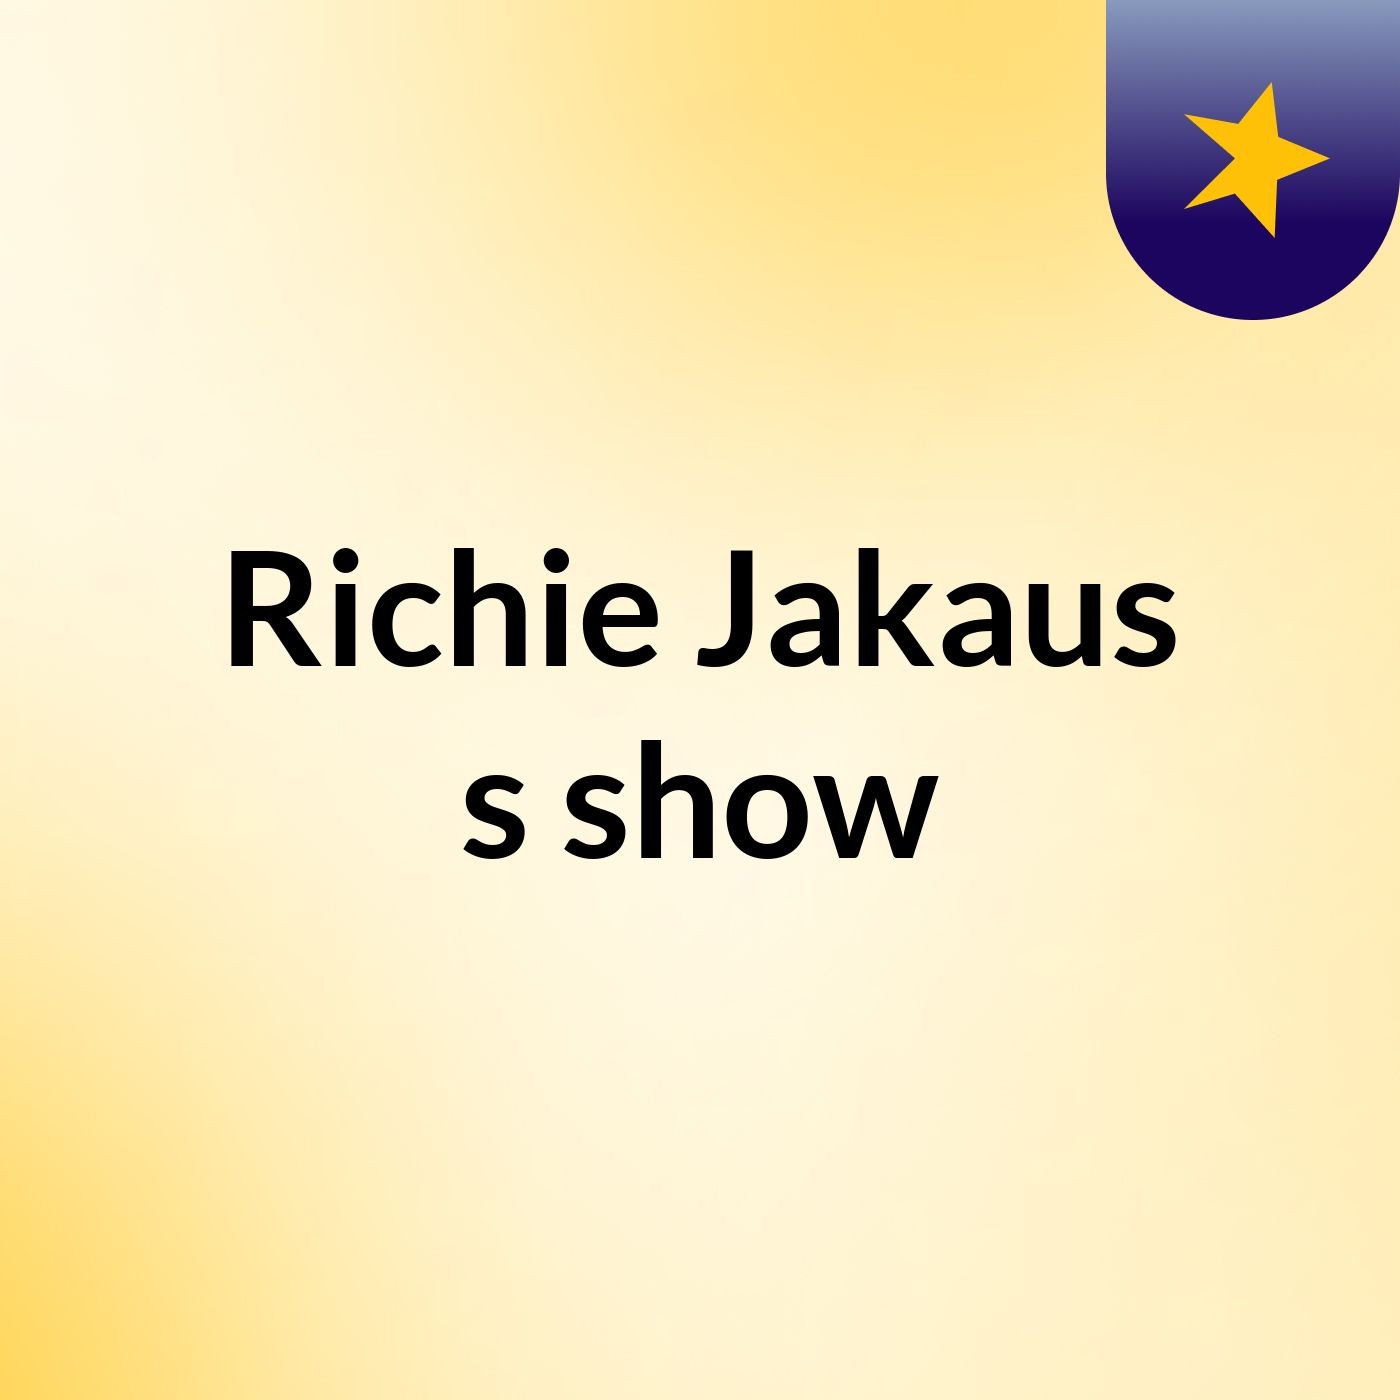 Richie Jakaus's show